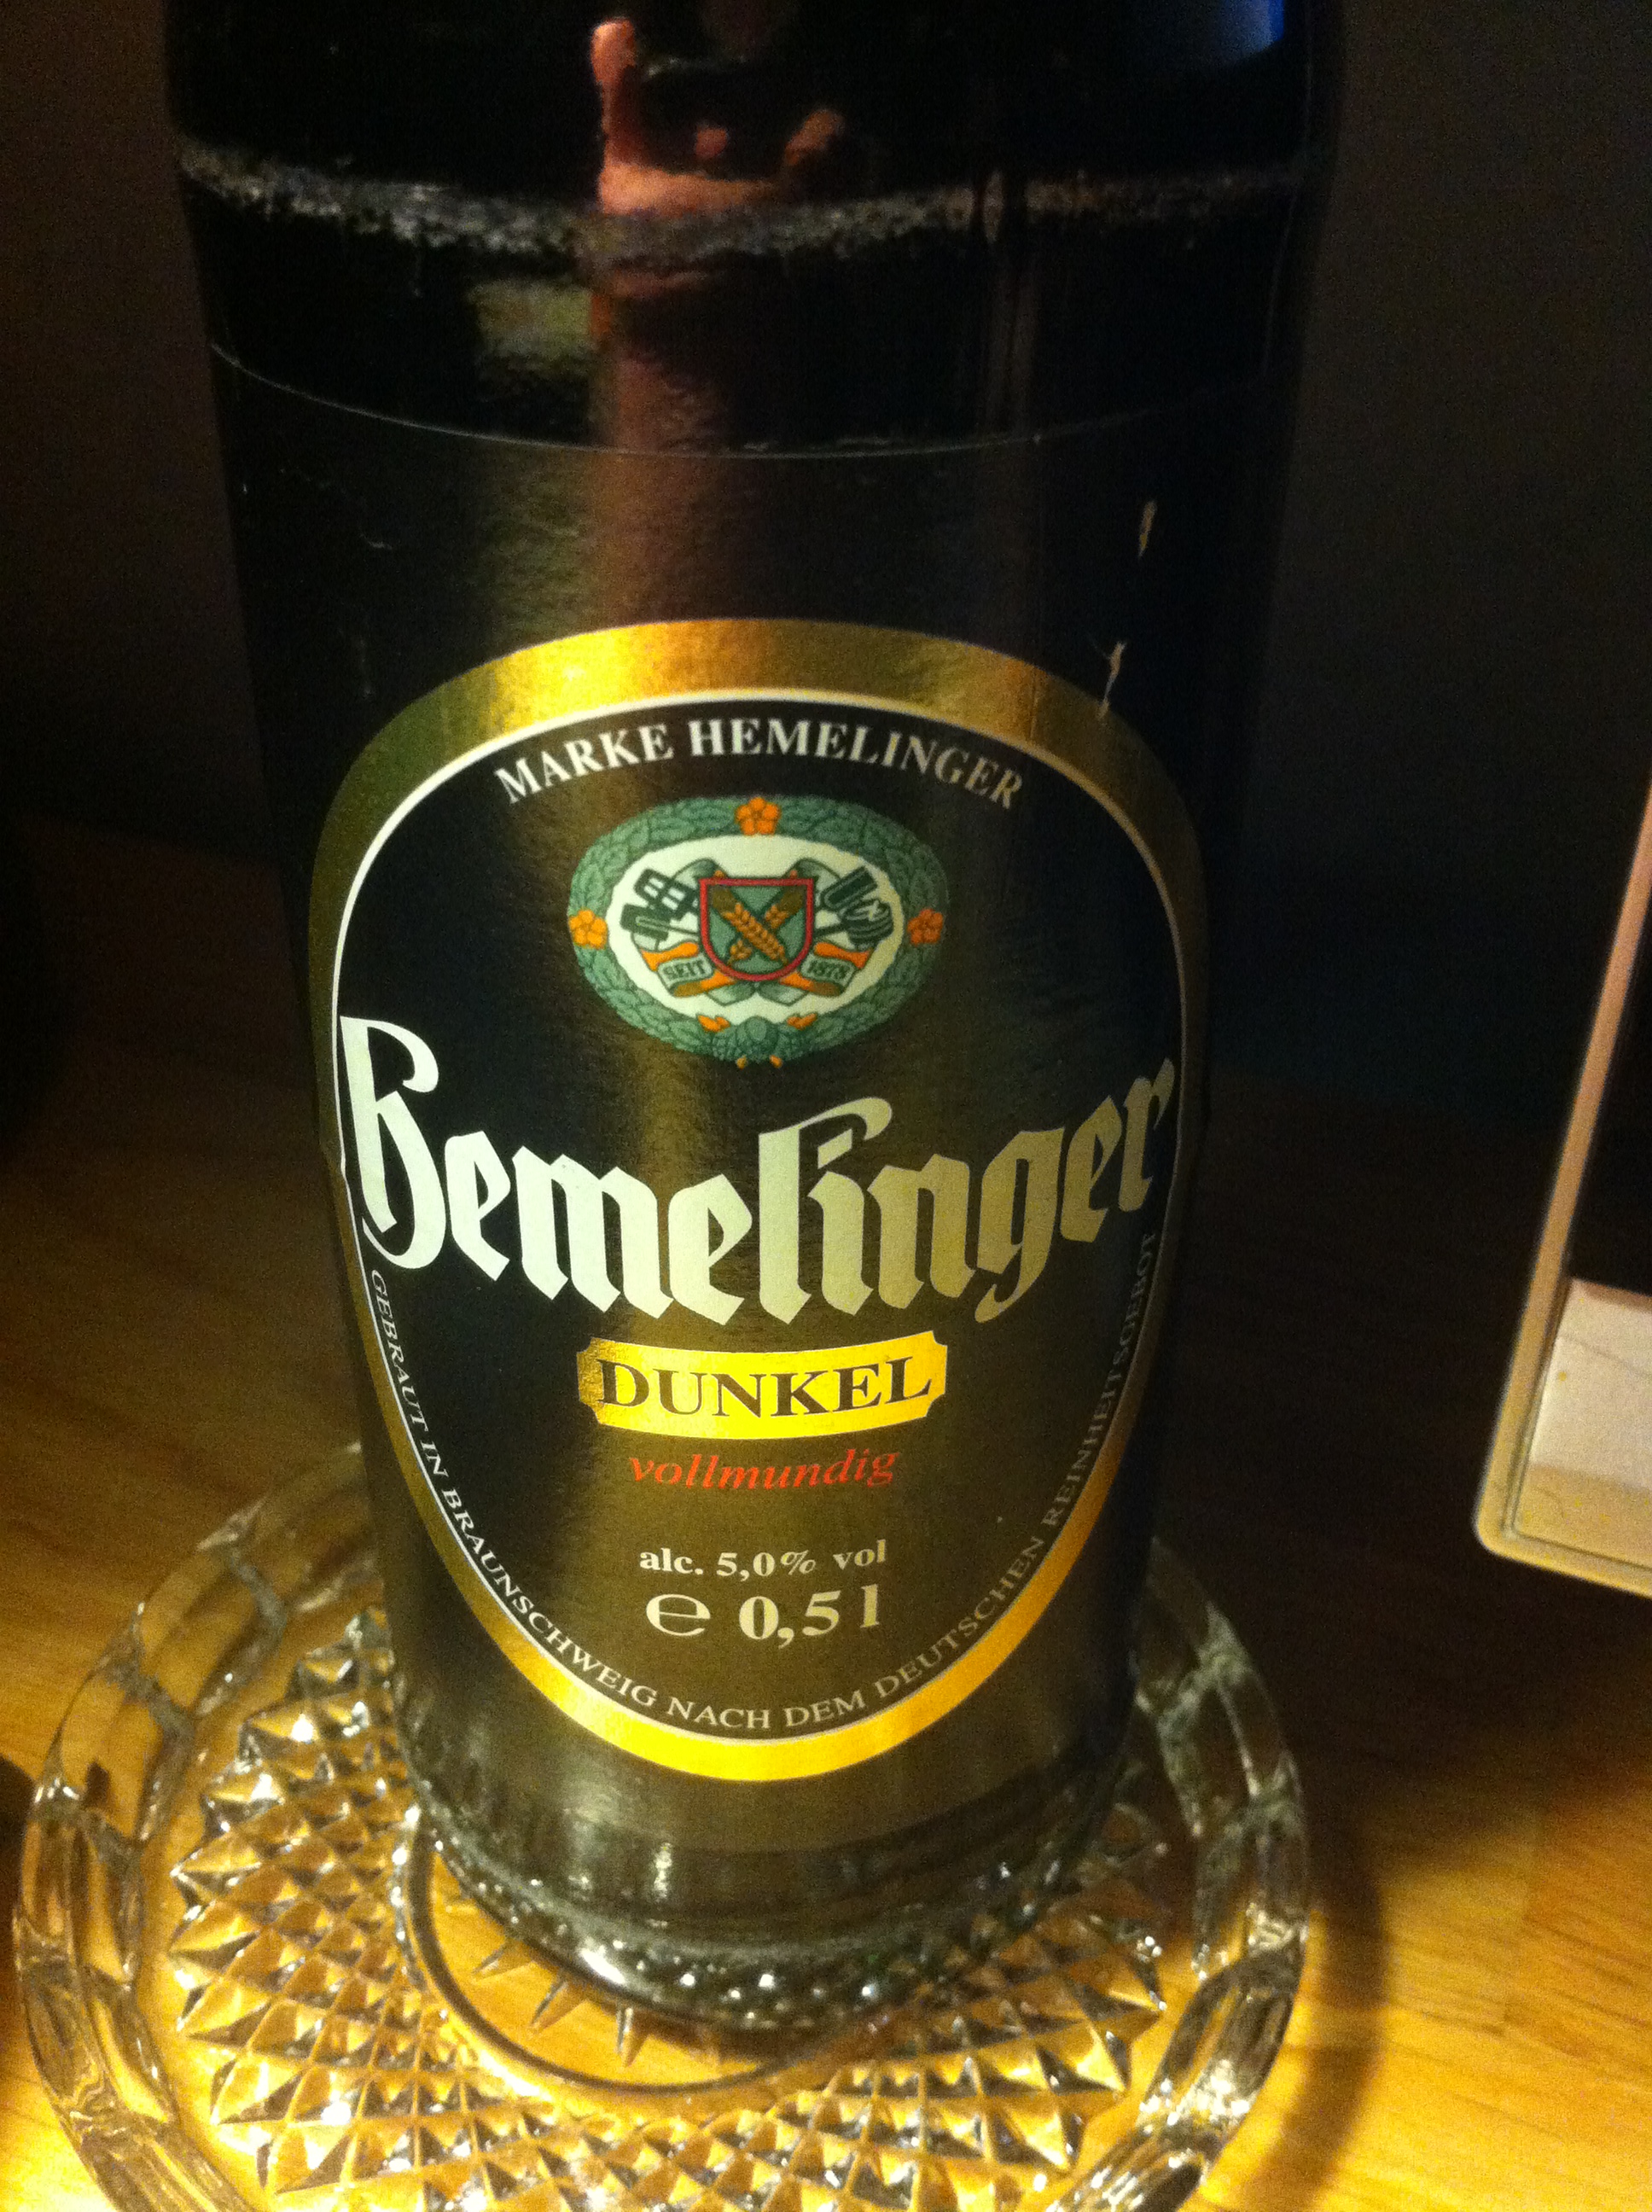 Hemelinger Bier - dunkel